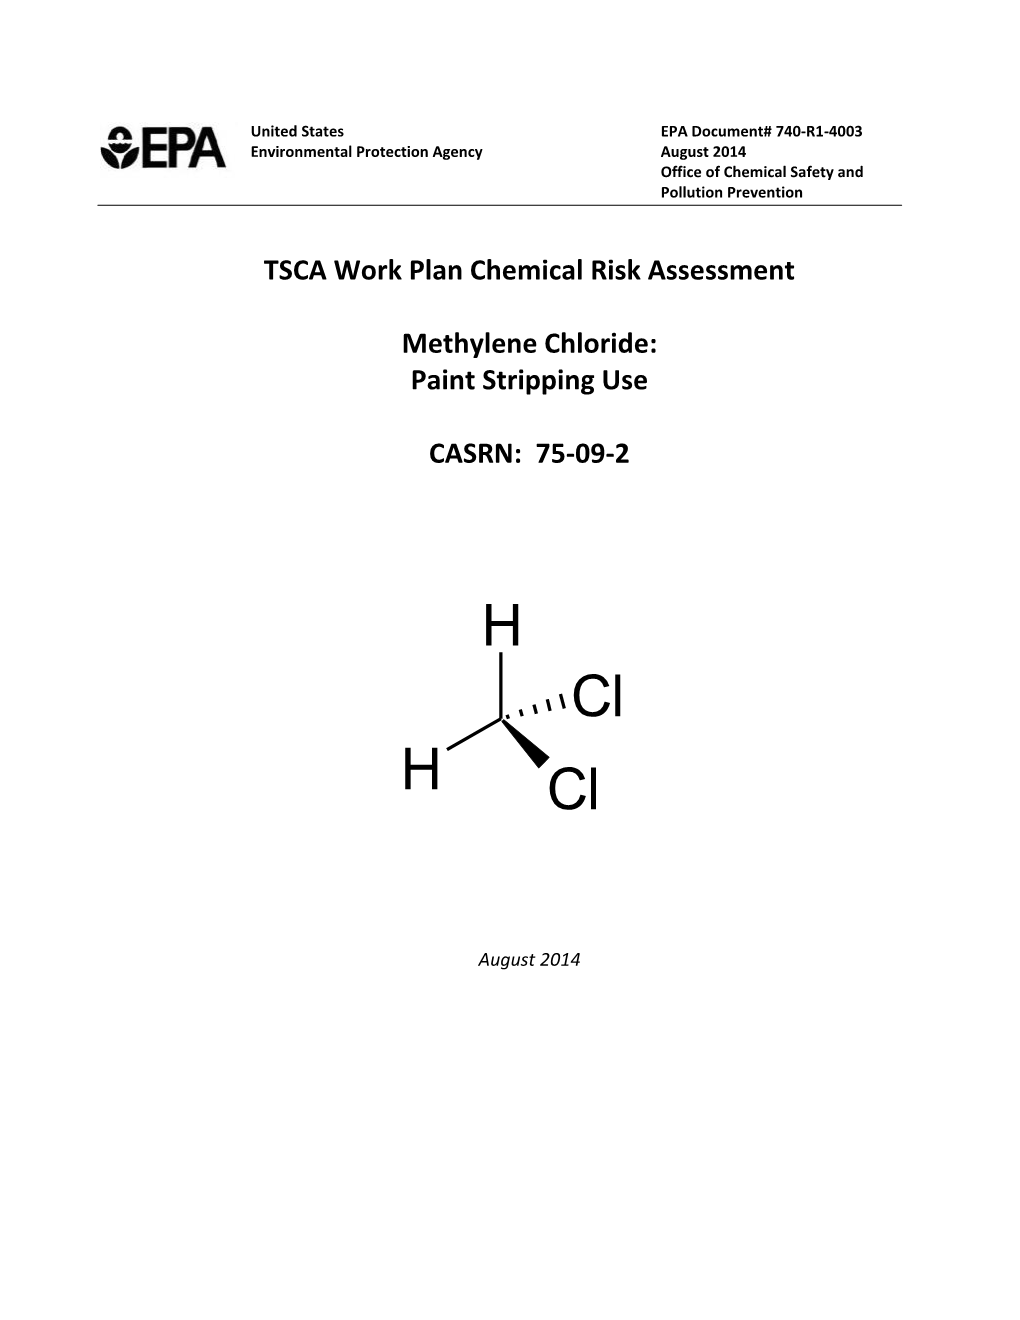 TSCA Work Plan Chemical Risk Assessment: Methylene Chloride